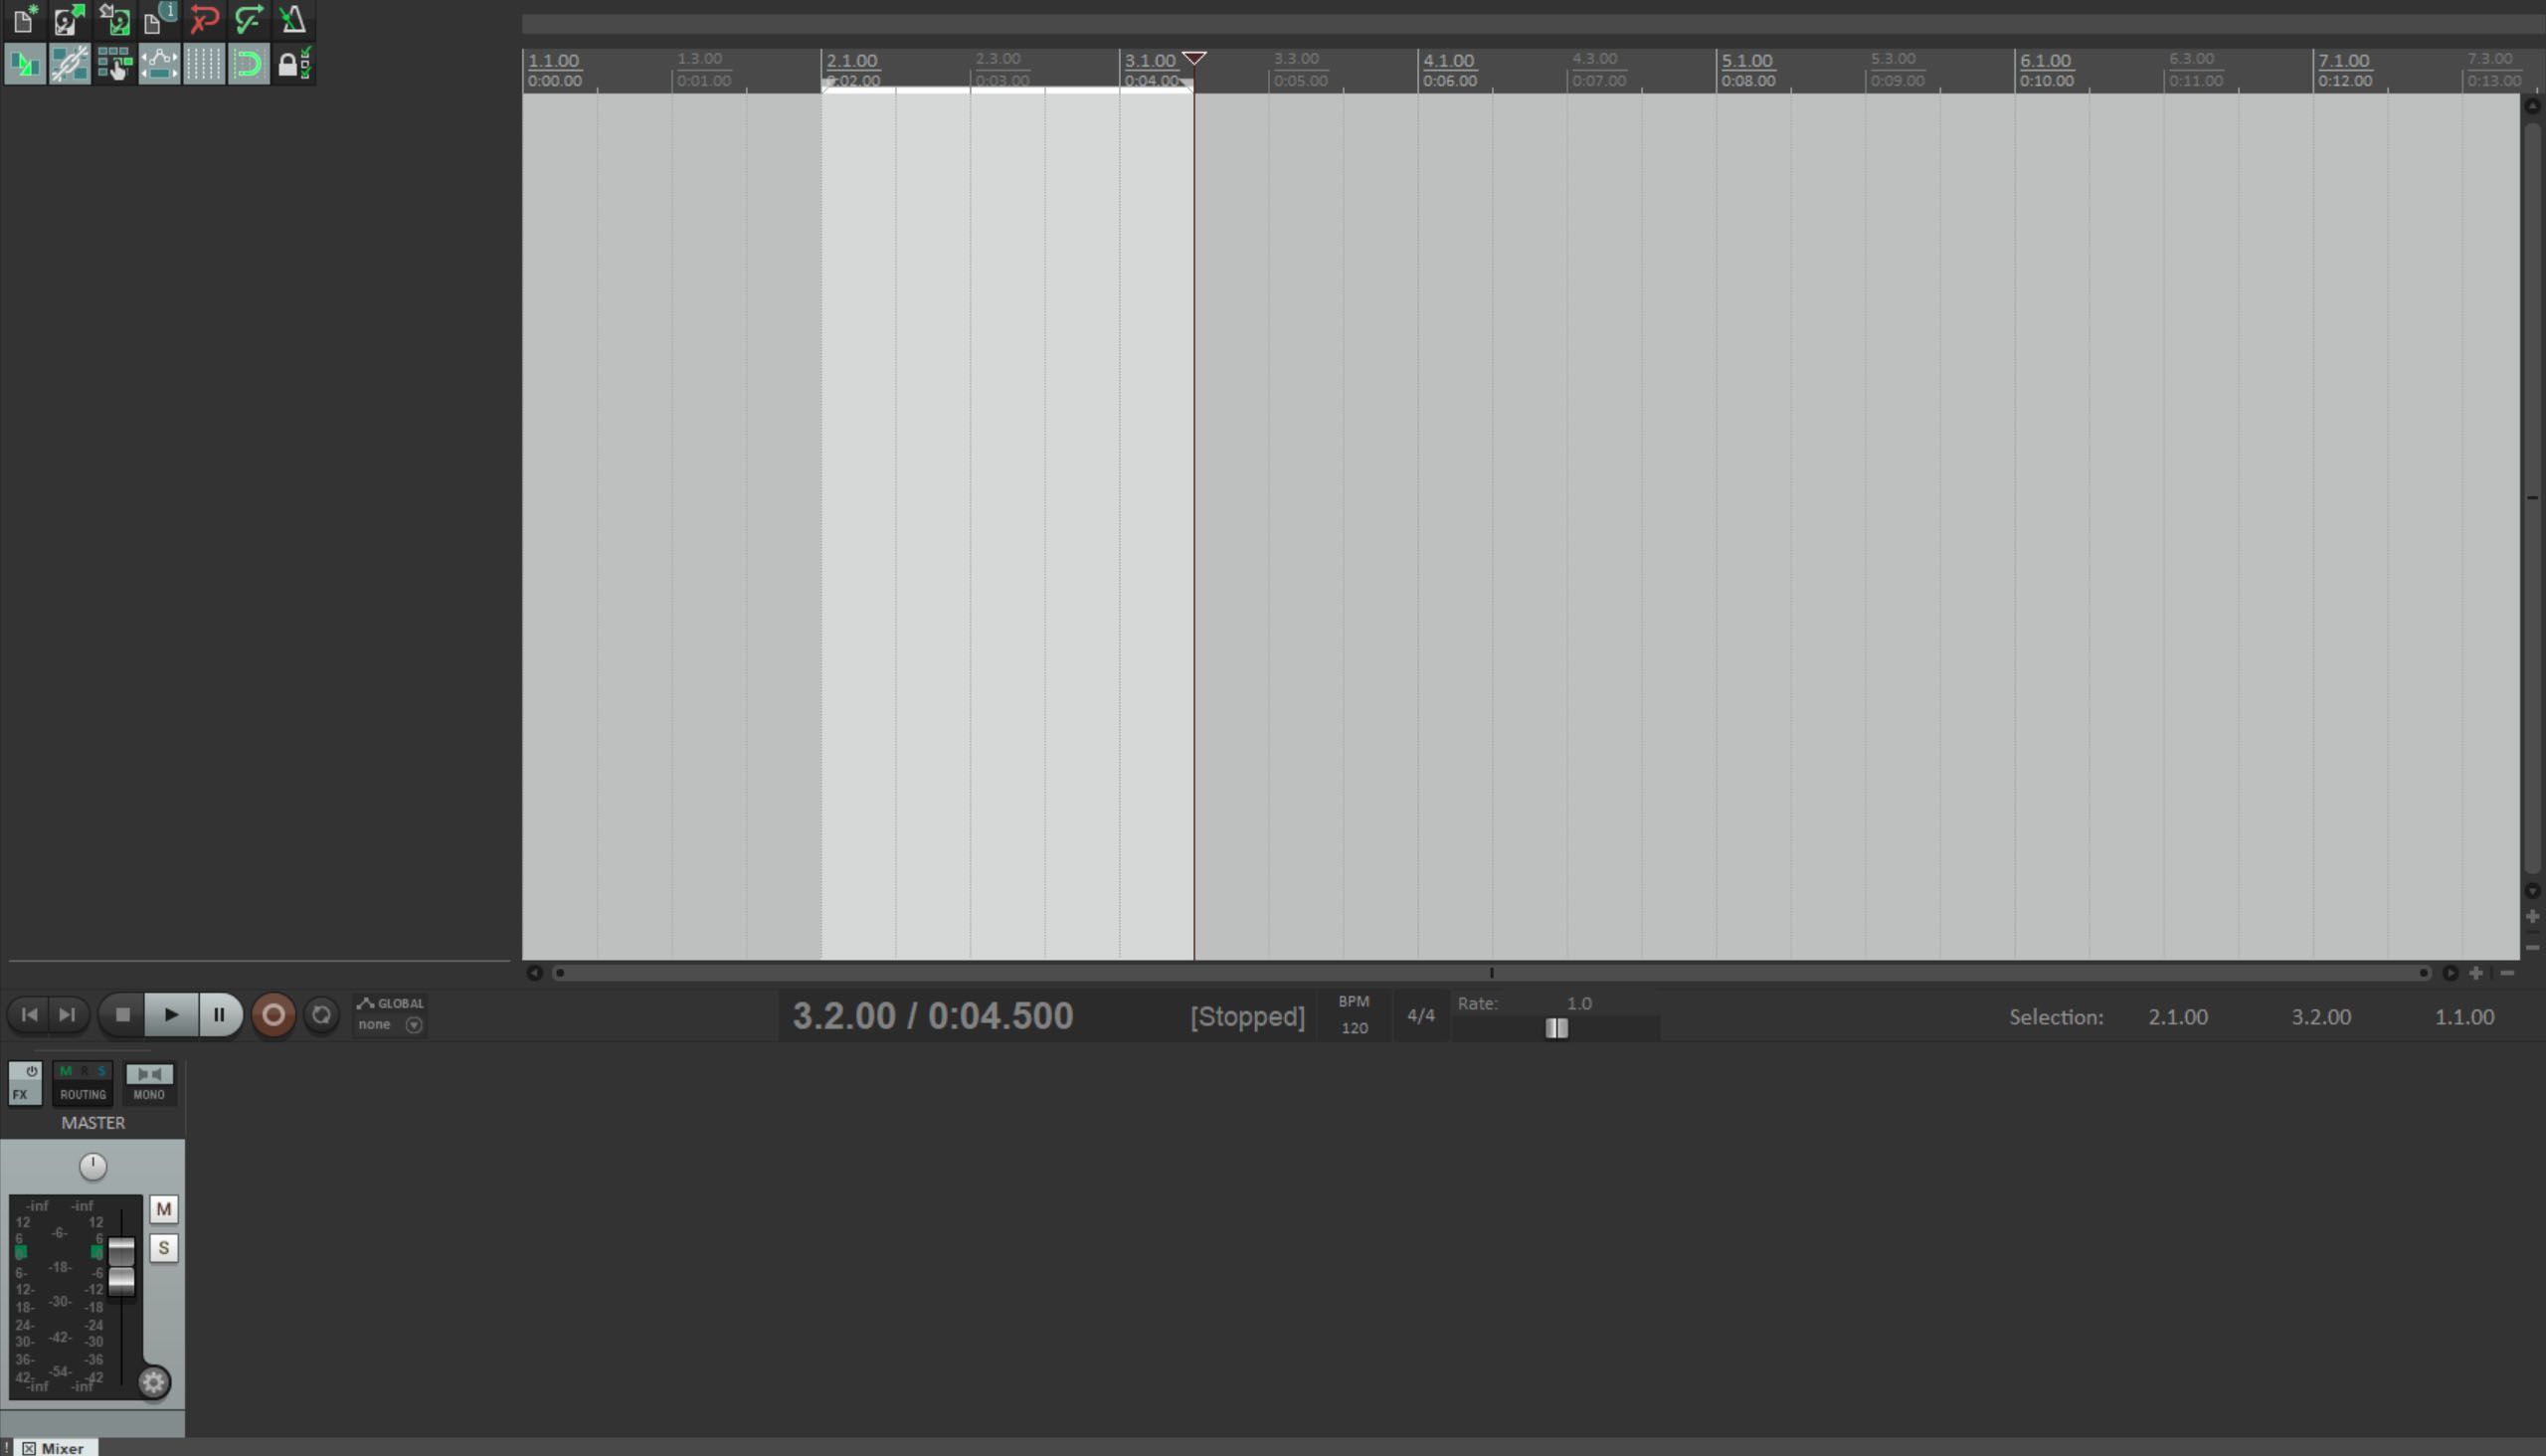 Скриншот приложения Reaper Music Production